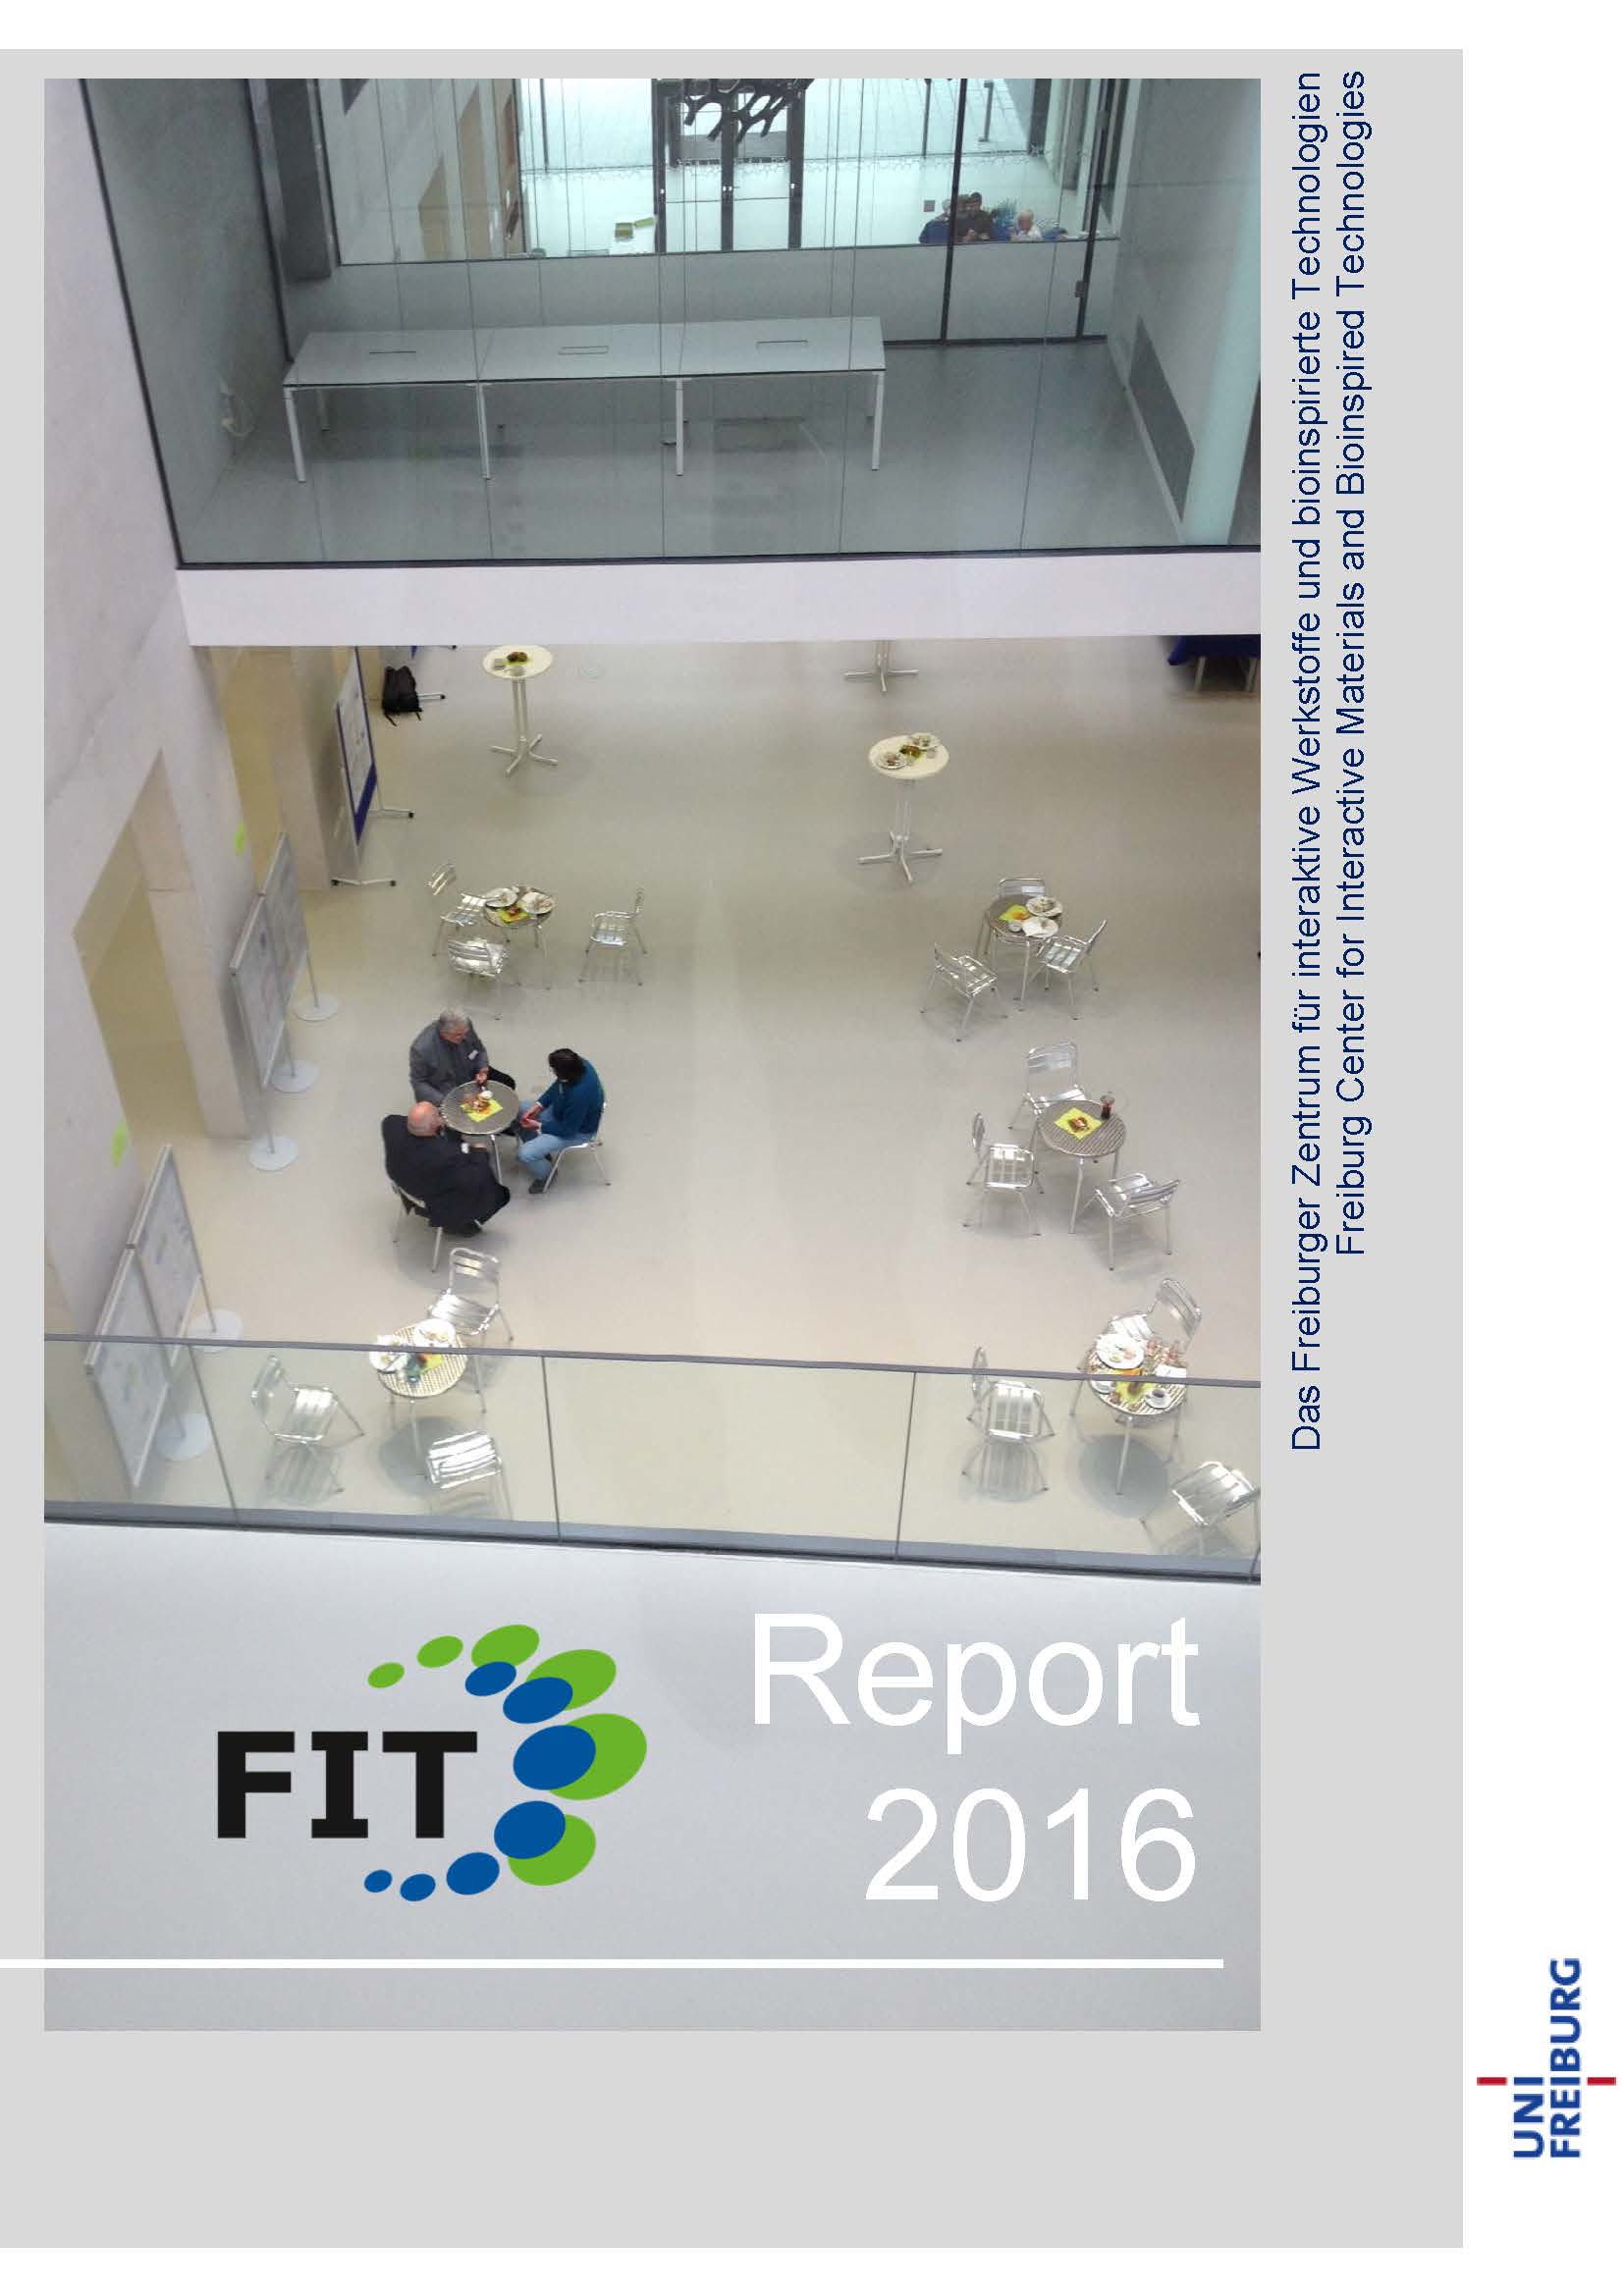 FIT-Report 2016 erschienen